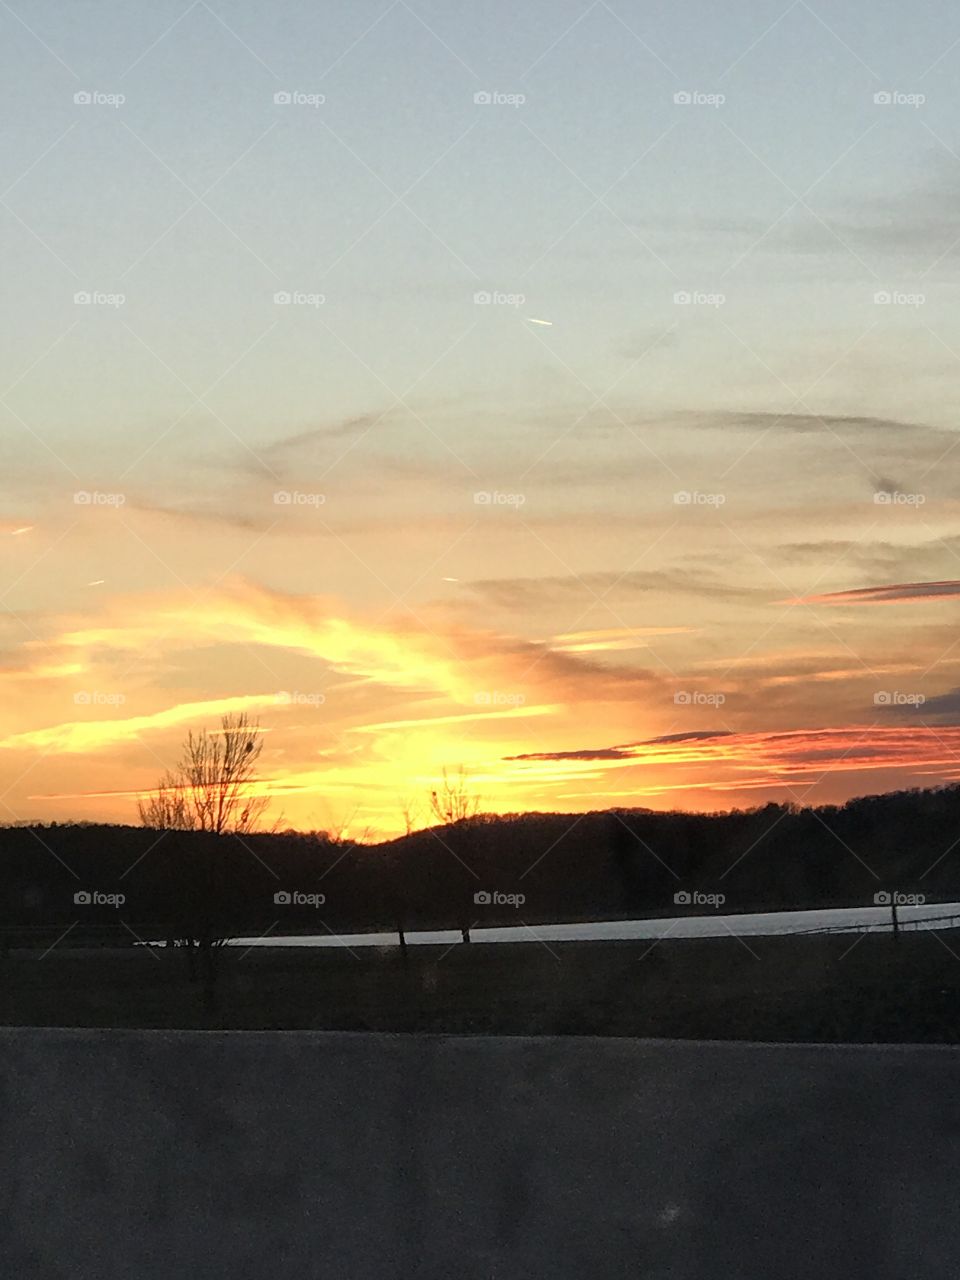 Beautiful sunset